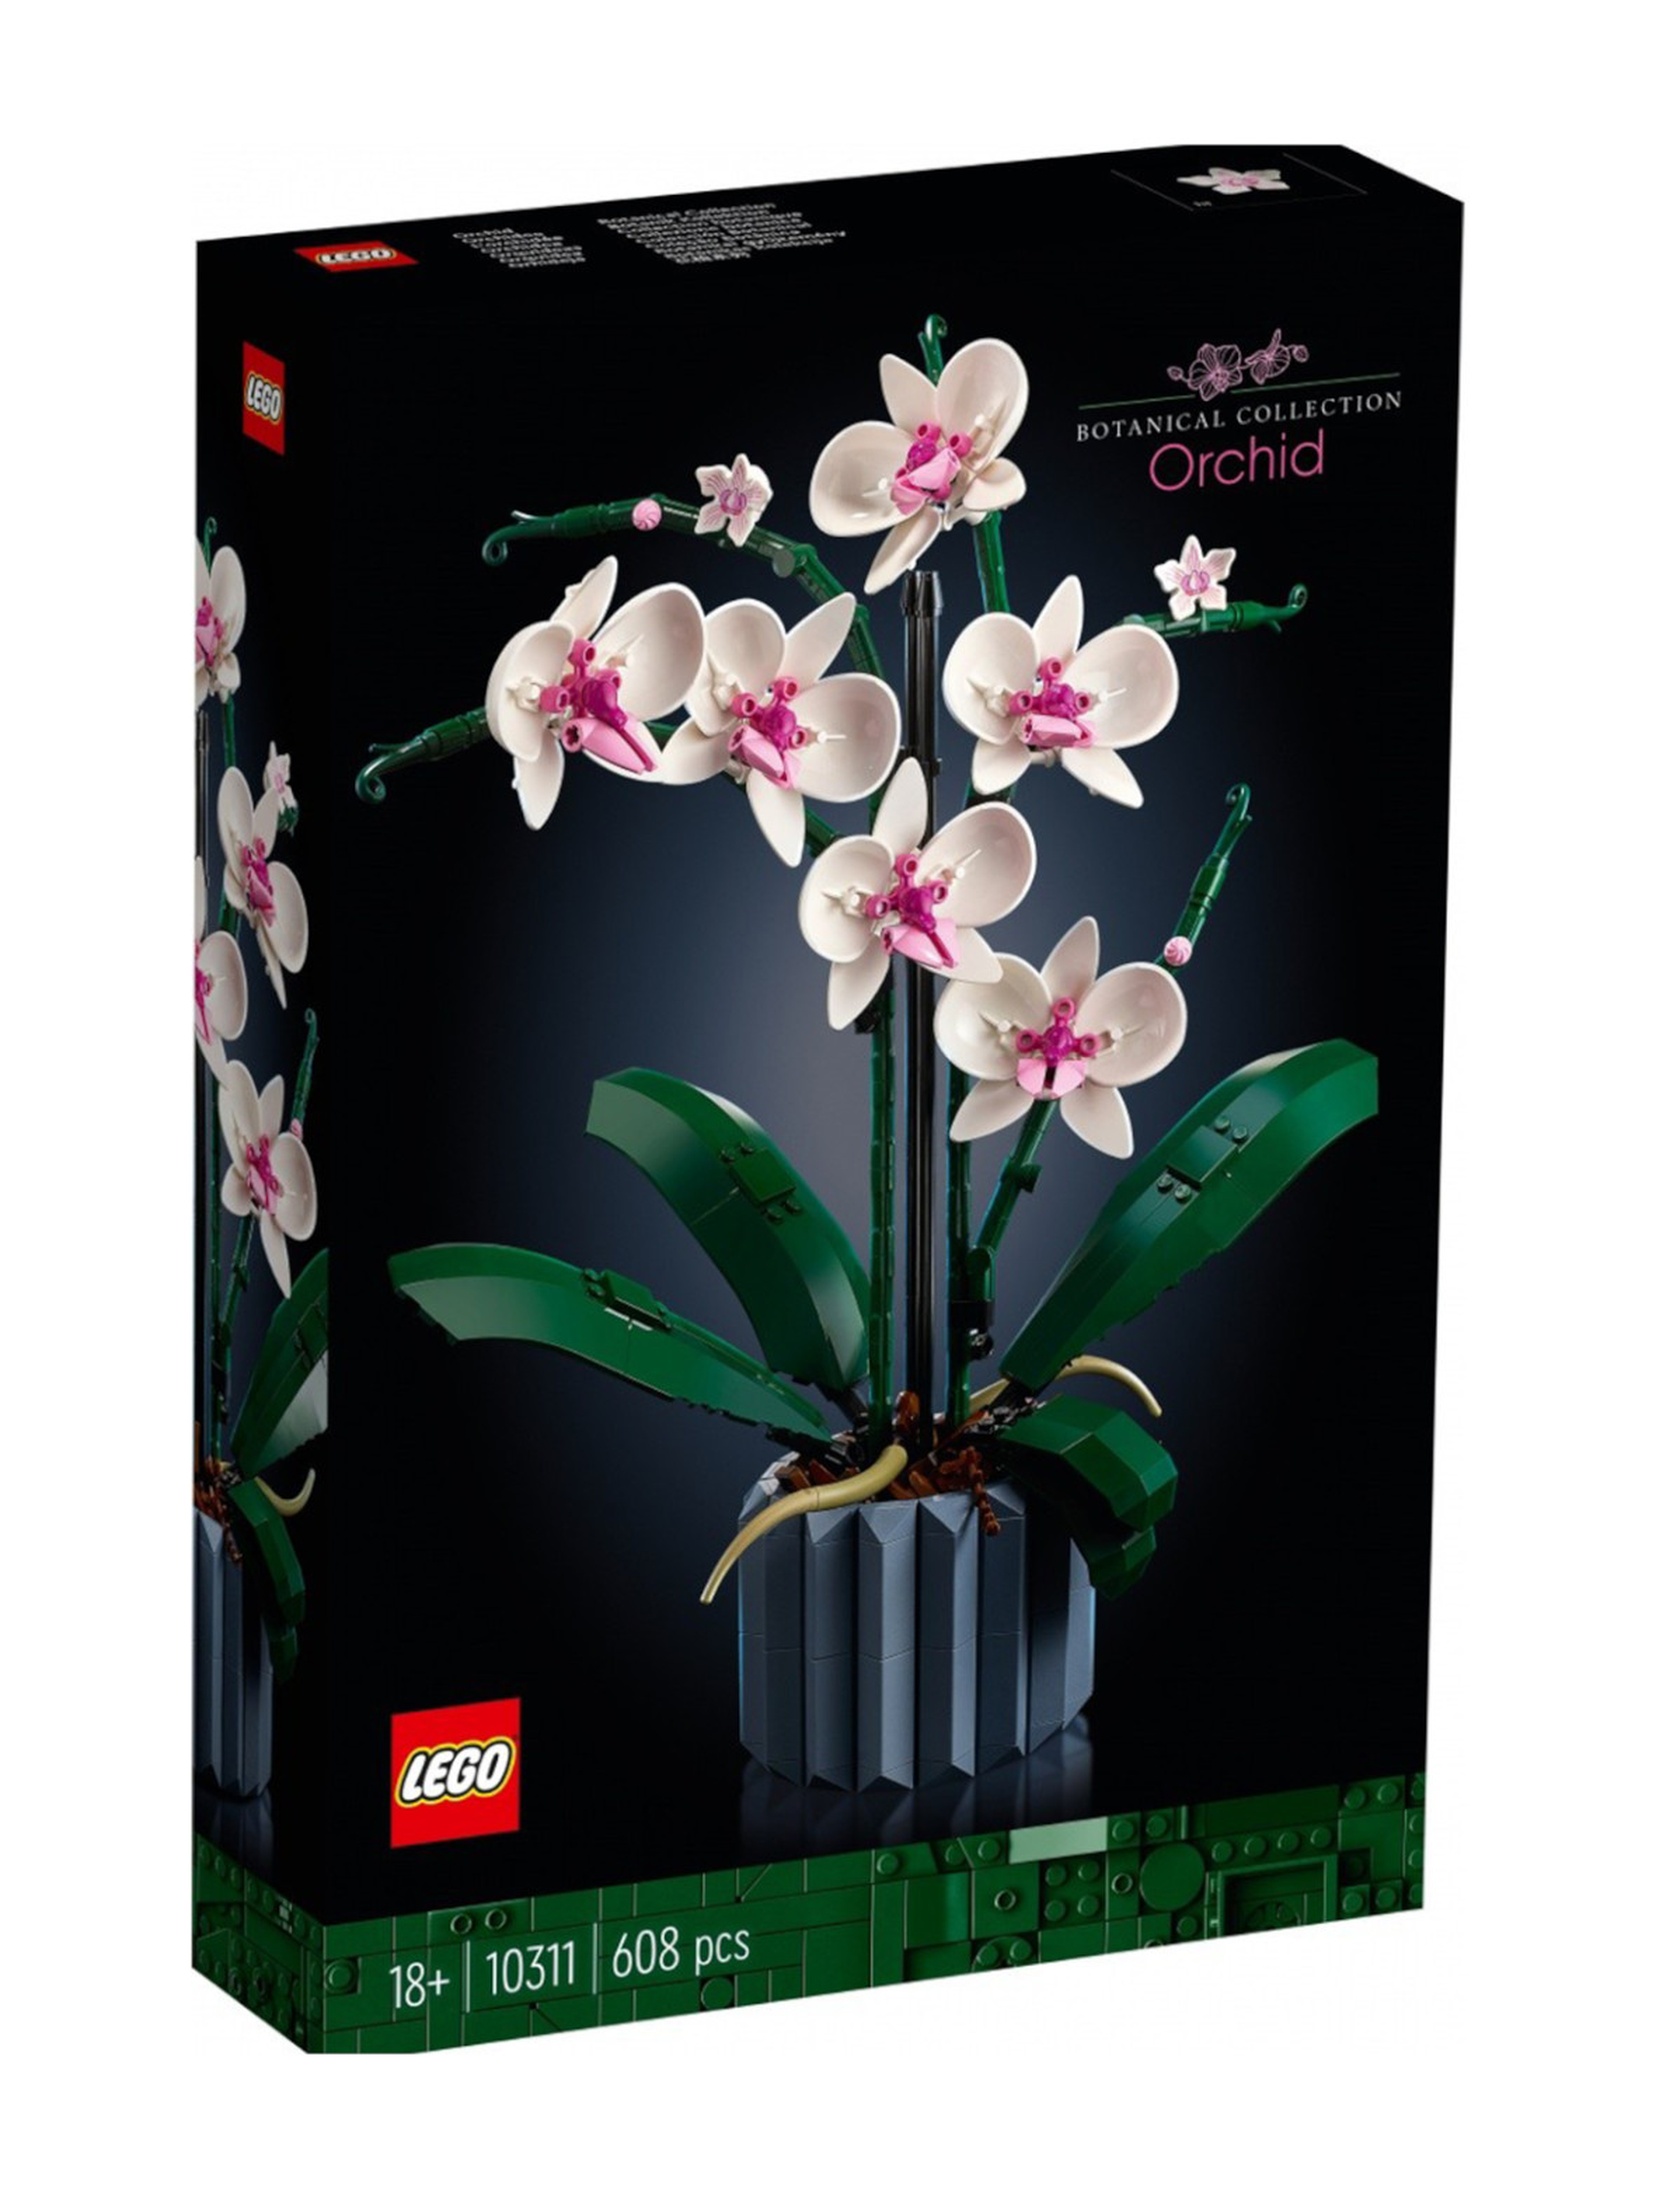 Klocki LEGO Creator Expert 10311 Orchidea - 608 elementów, wiek 18 +